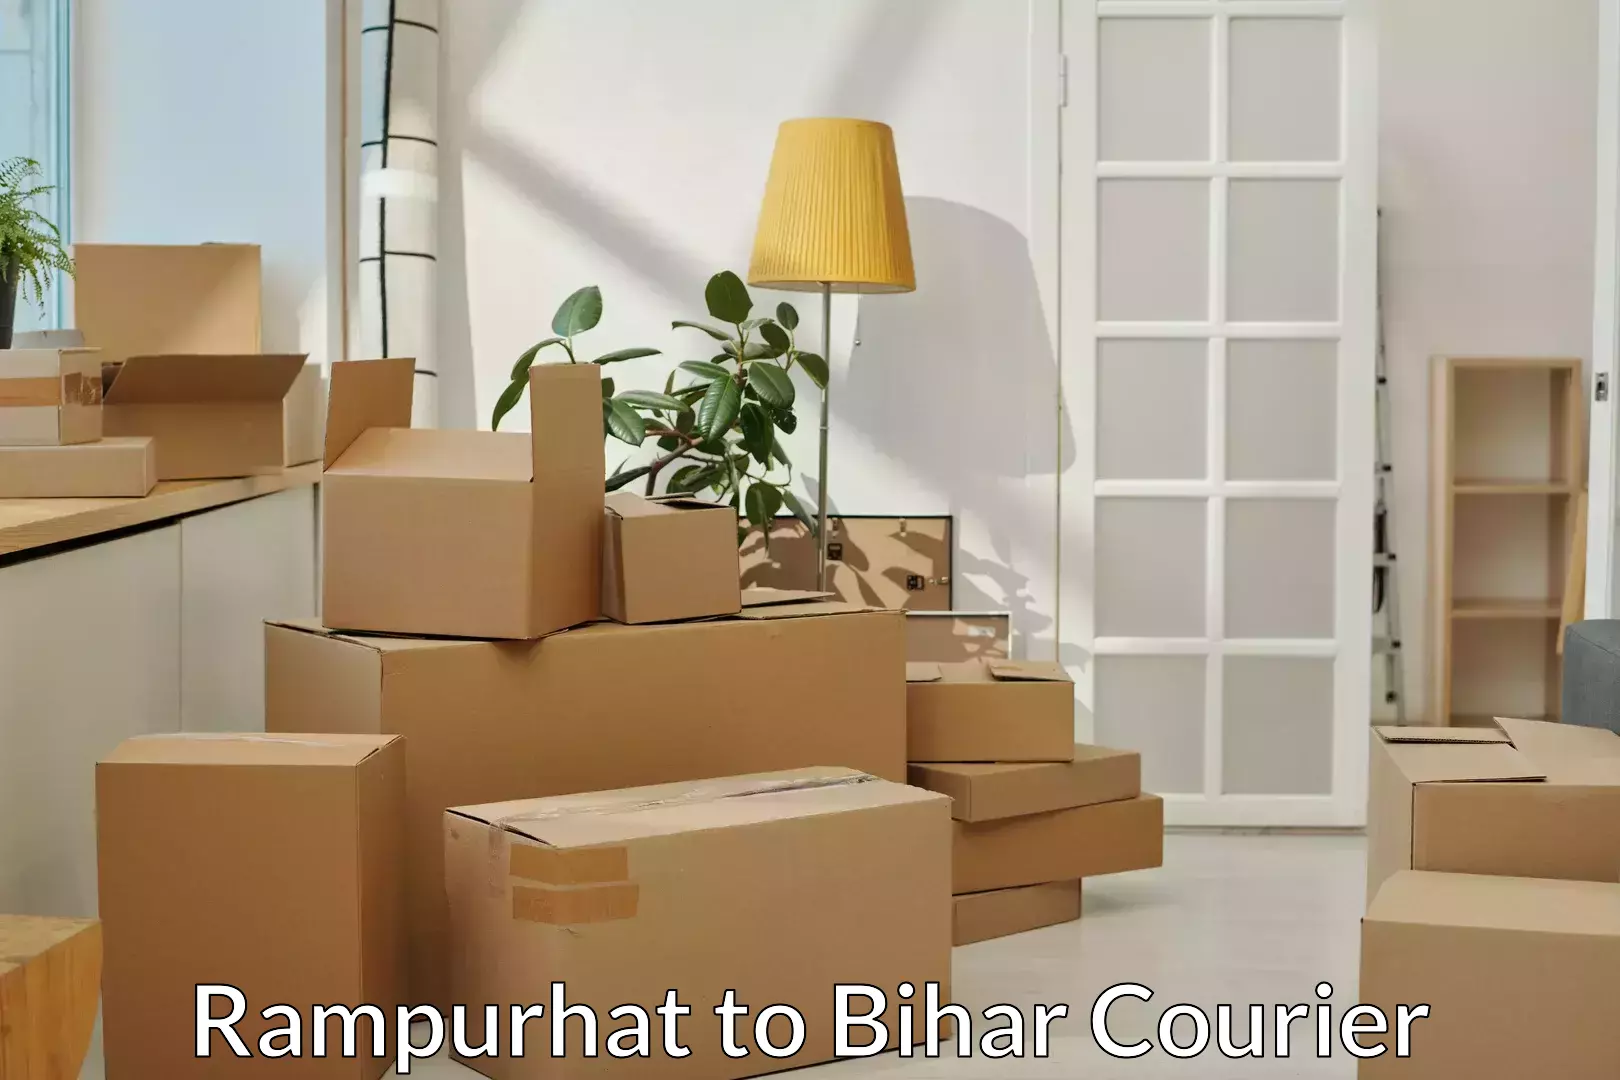 Furniture moving experts Rampurhat to Kursela